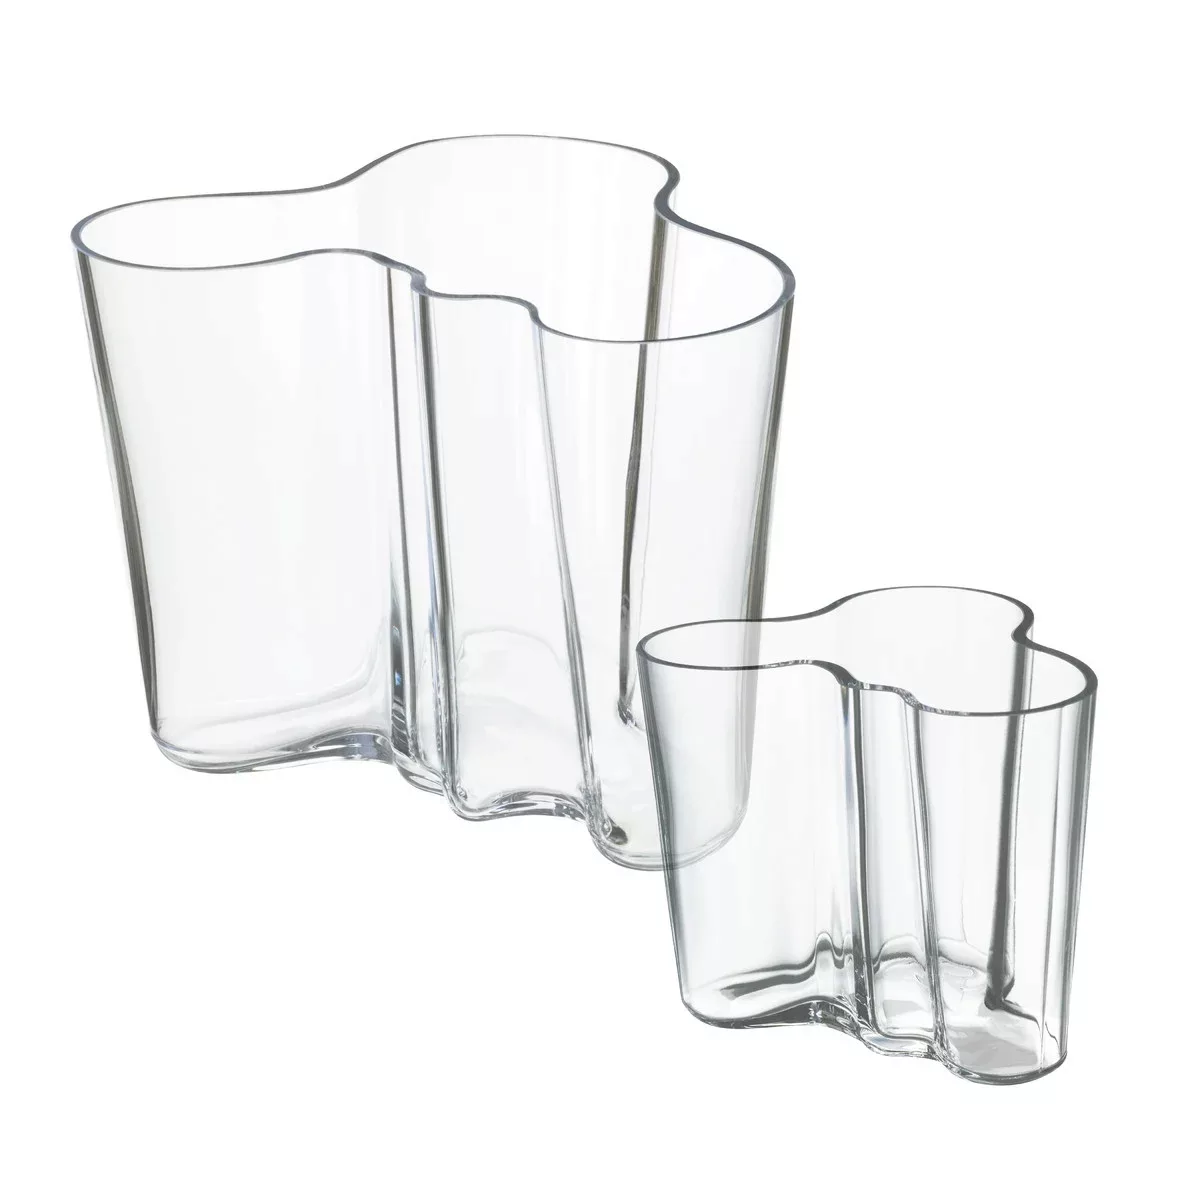 iittala - Aktionsset Alvar Aalto Vasen 2 Stück - transparent/1x Vase 160mm günstig online kaufen